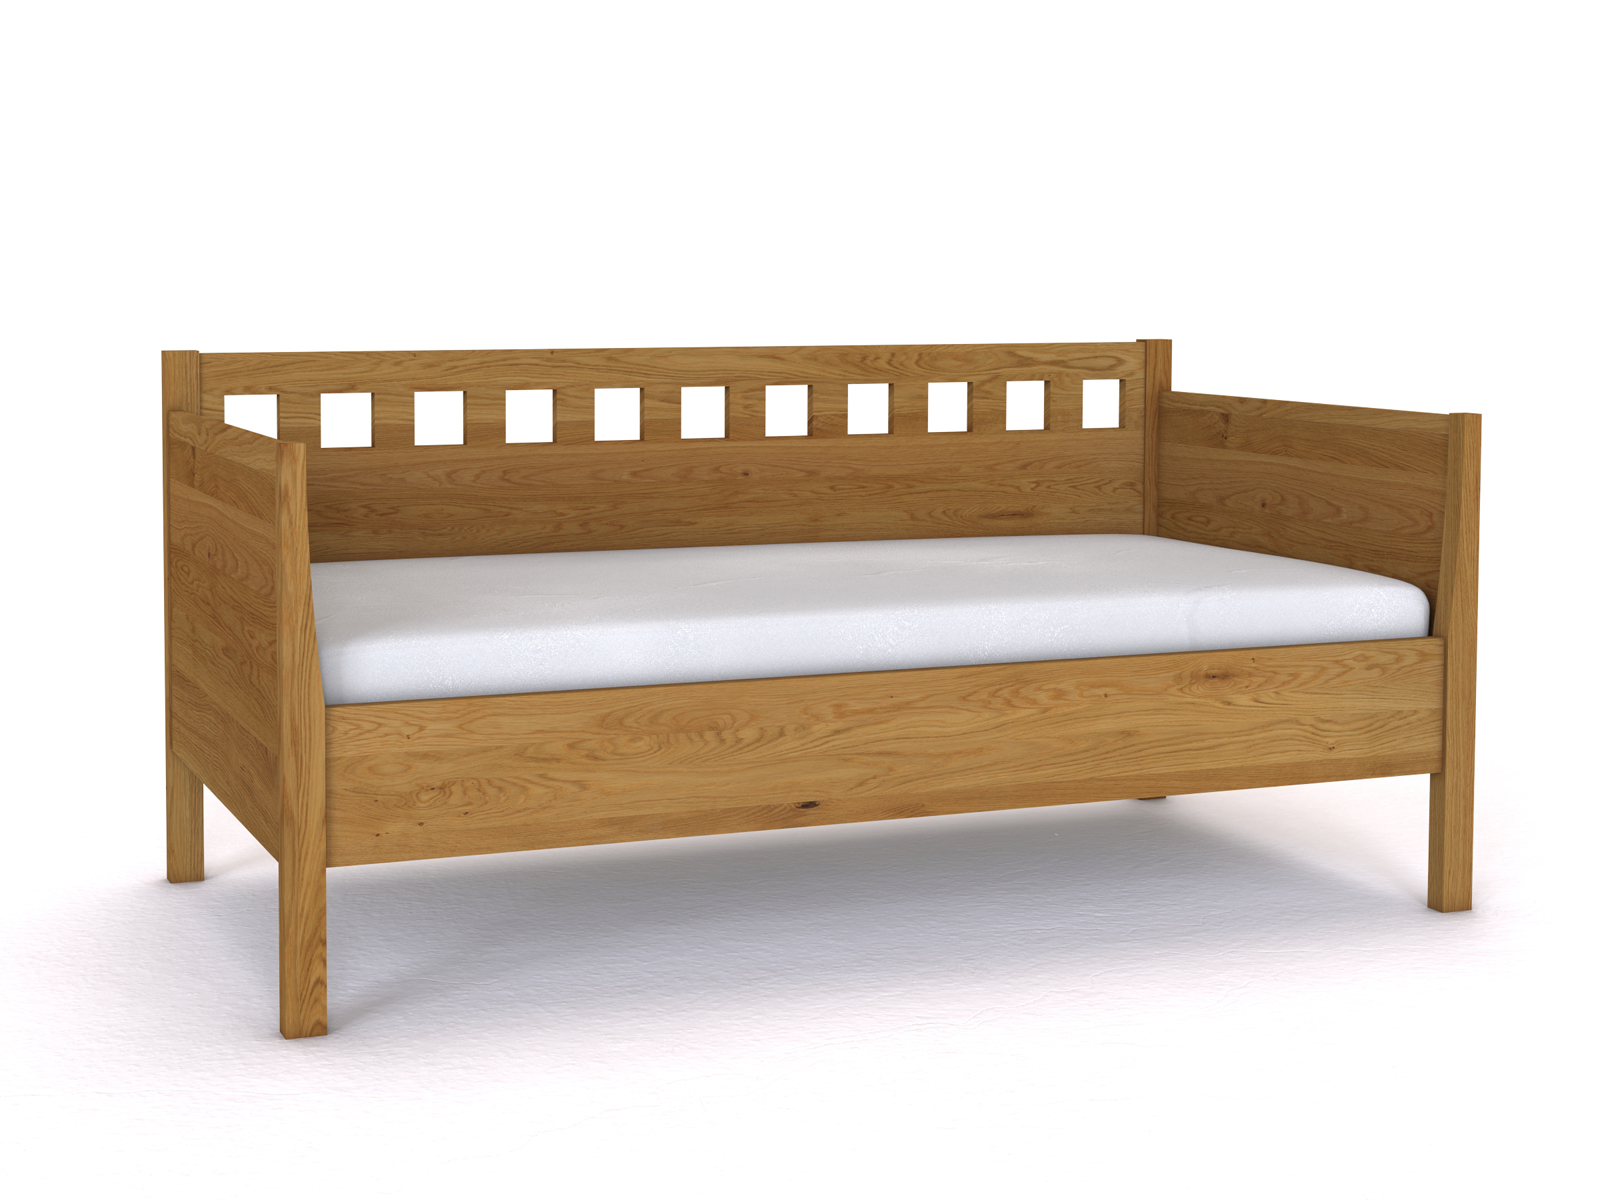 Sofabett „Katrin“ aus Eiche in den Maßen 90 x 200 cm - mit zwei Armlehnen